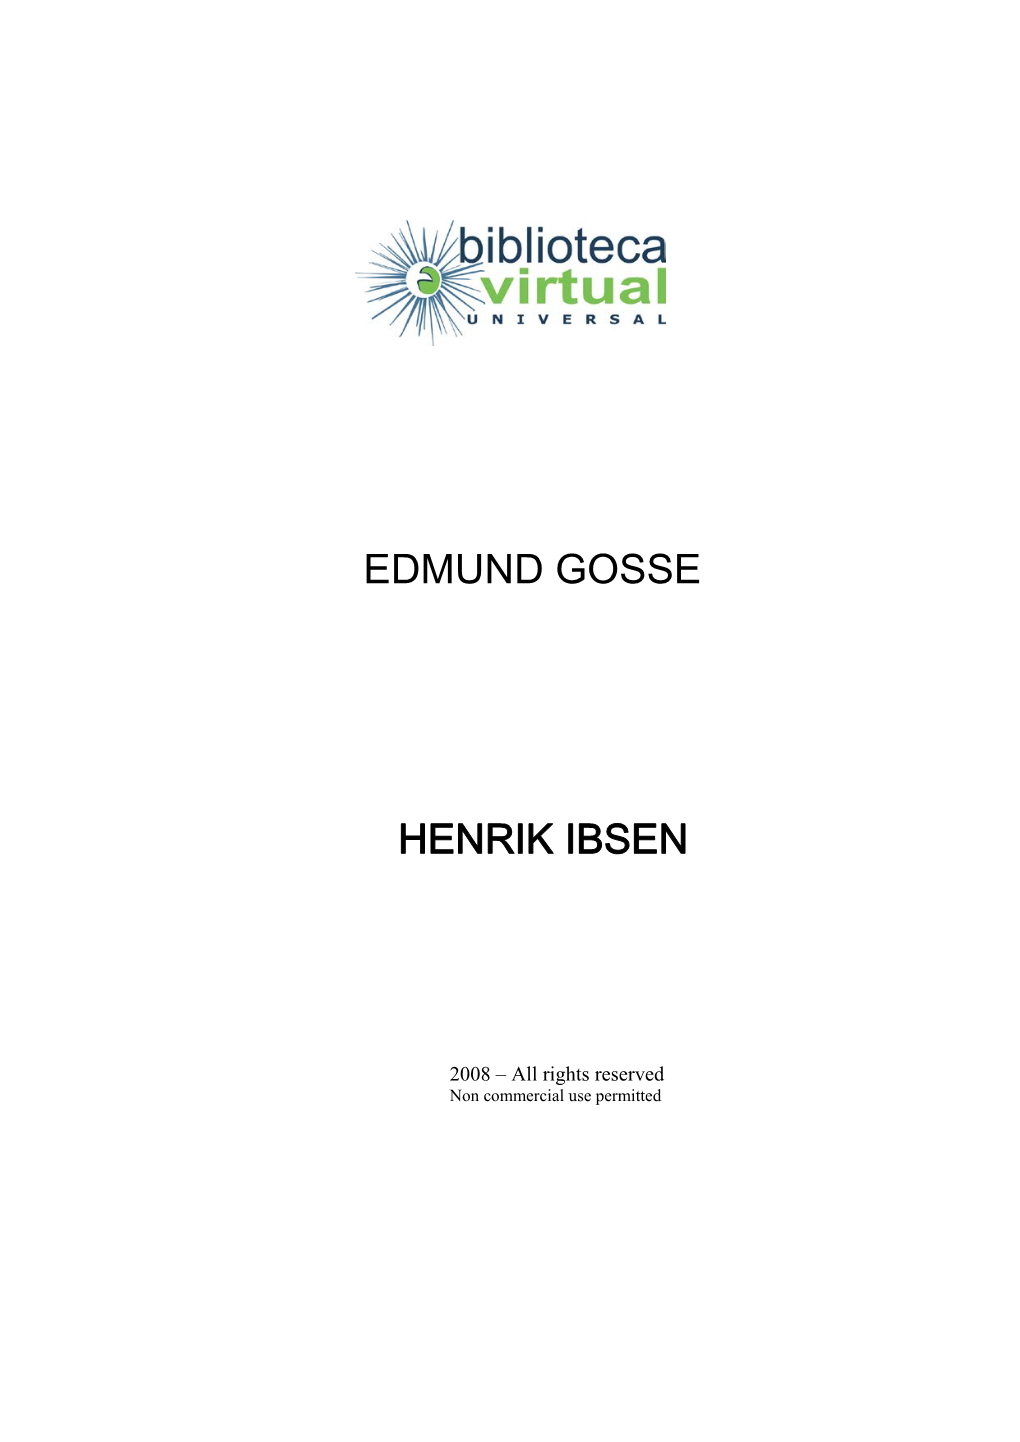 Edmund Gosse Henrik Ibsen